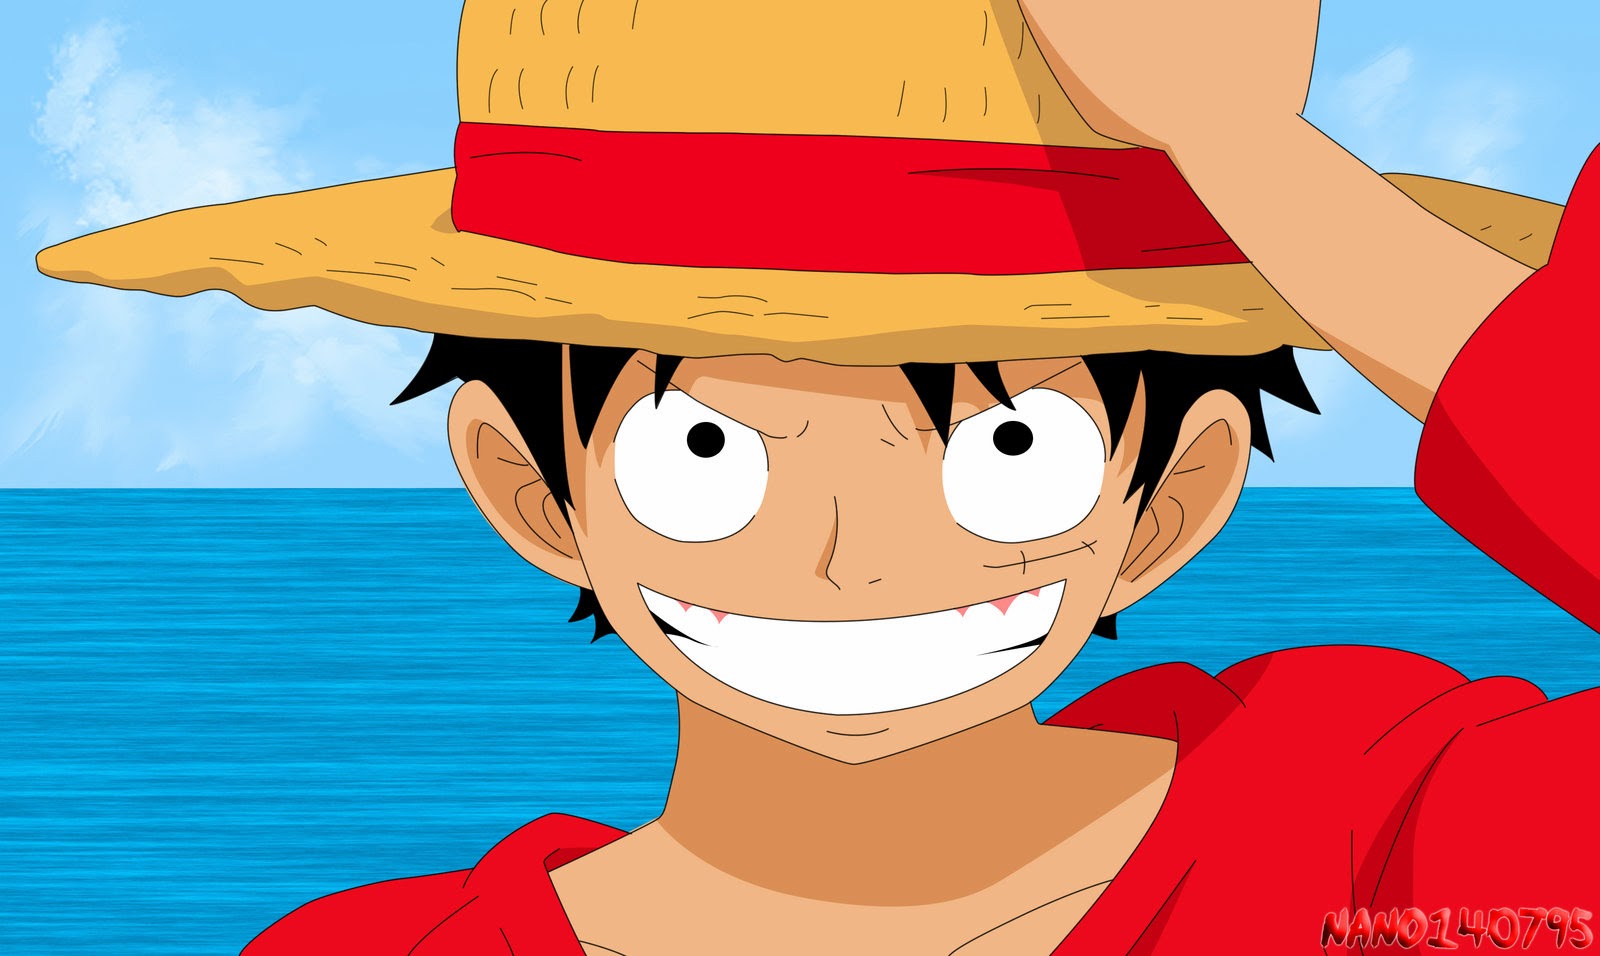 تحميل جميع حلقات انمي ون بيس One Piece مترجم بجودة عالية Hd على الخليج Gulfup